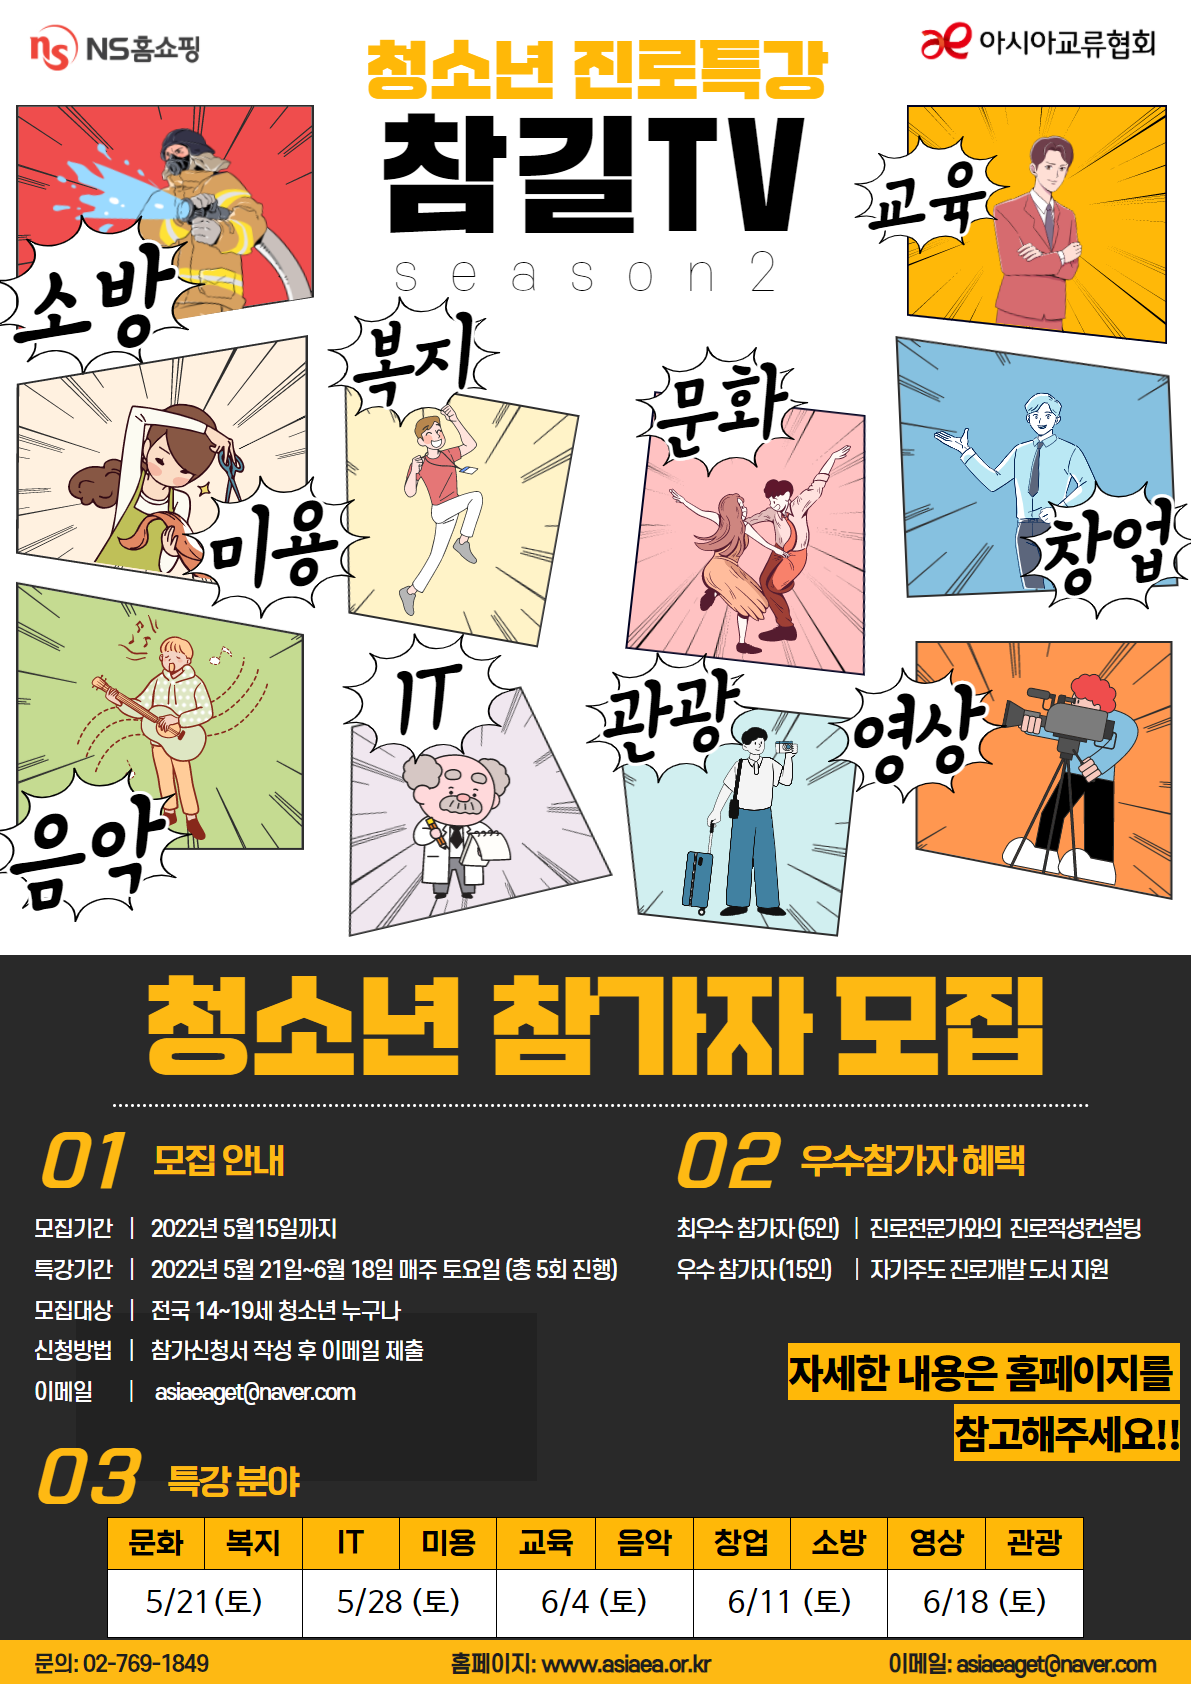 참길TV 시즌2 청소년 참가자 모집 포스터 _5.15.png